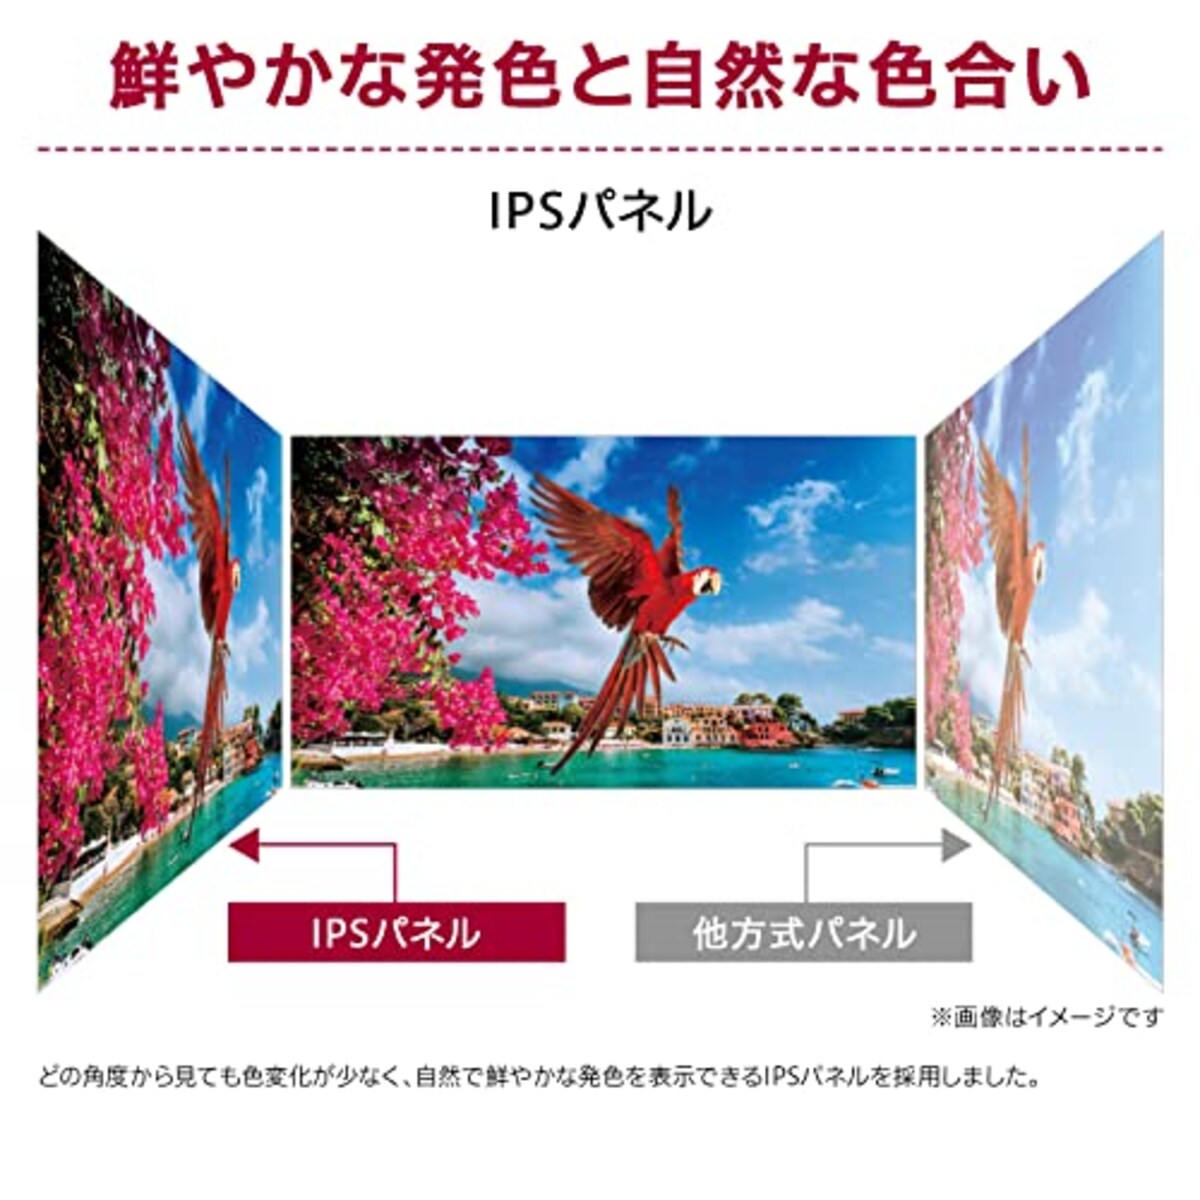  【Amazon.co.jp 限定】LG フレームレス モニター ディスプレイ 24ML600S-W 23.8インチ / フルHD/IPS アンチグレア / 1ms(MBR) / FreeSync対応/スピーカー搭載/フリッカーセーフ、ブルーライト低減機能/HDMI×2、D-sub画像2 